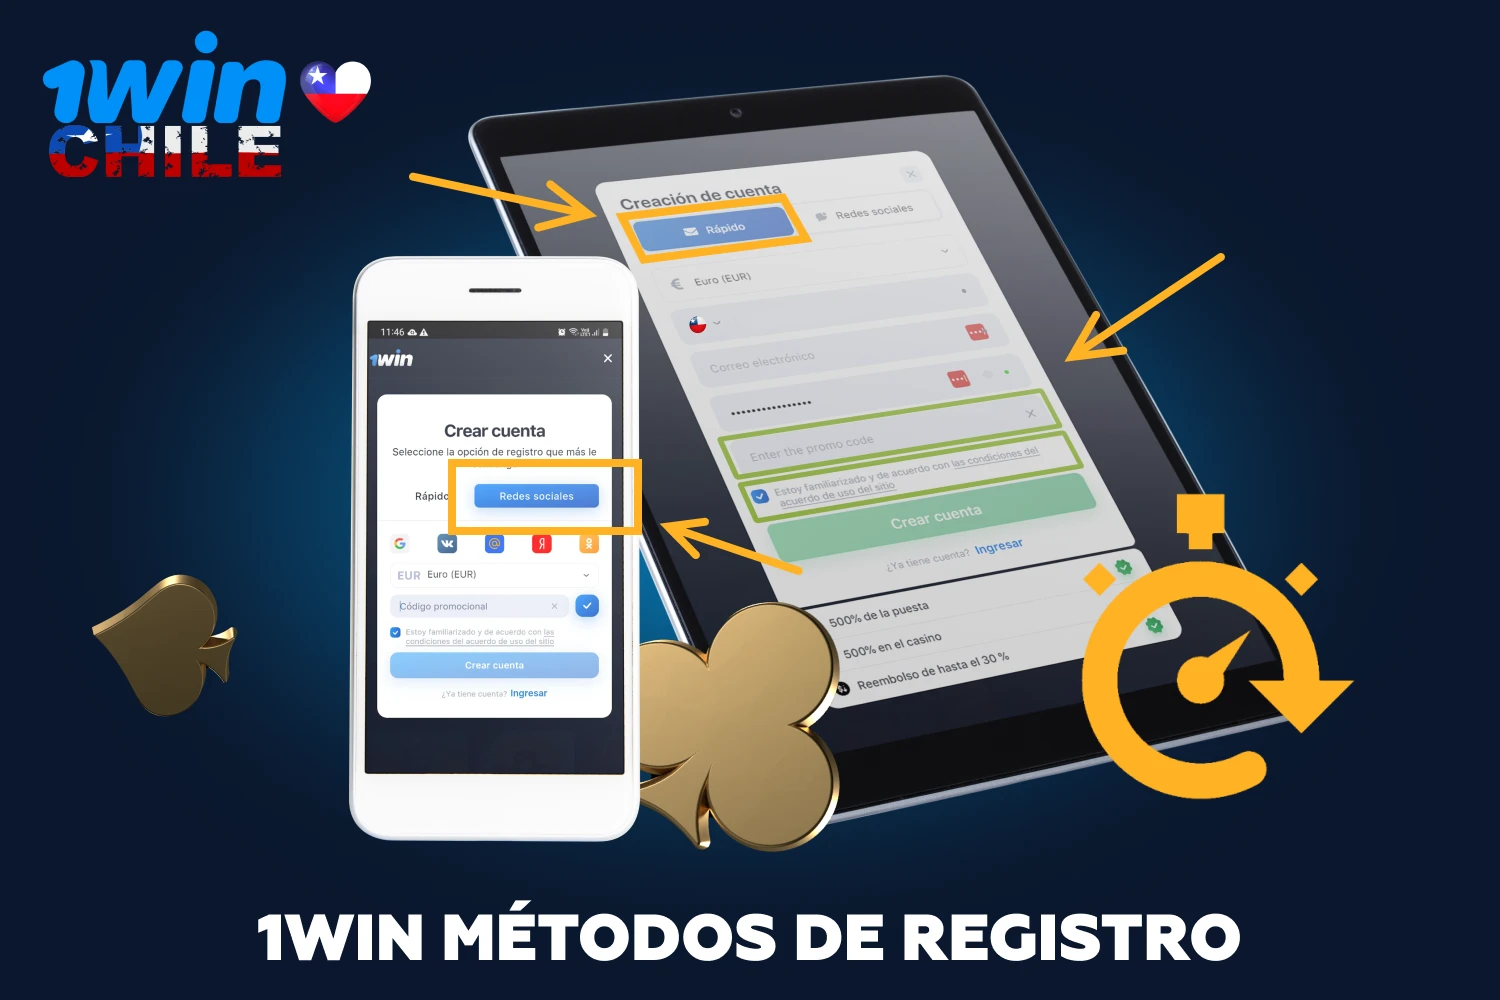 1win ofrece dos opciones de registro rápidas y sencillas, tras las cuales los jugadores de Chile tendrán acceso a todas las funciones del casino